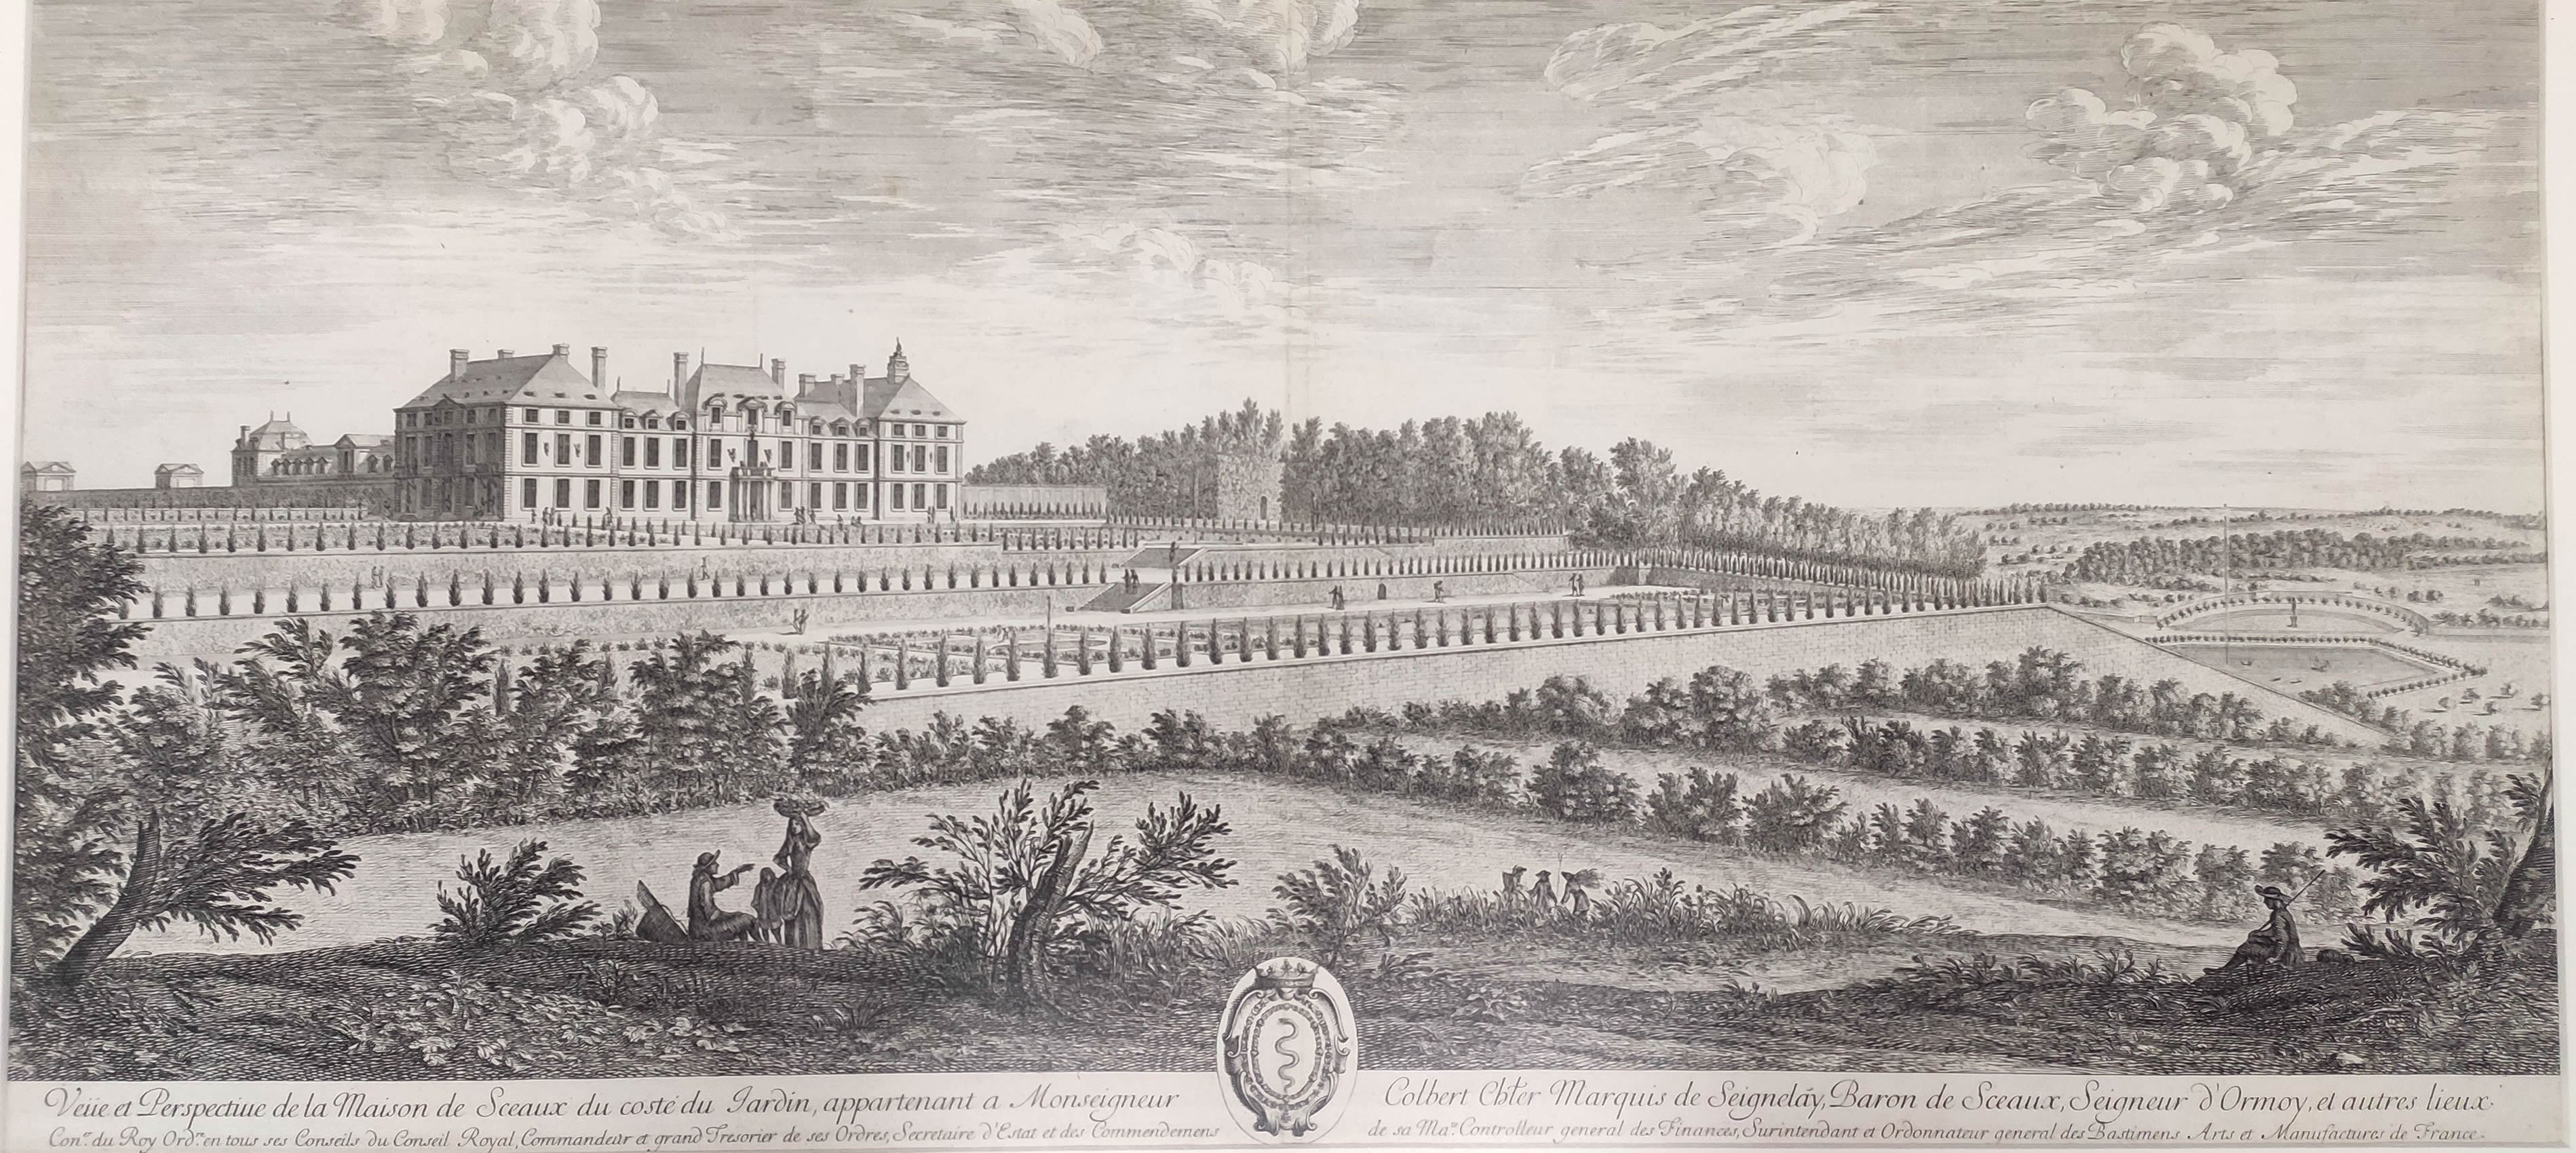 Israël Silvestre : Veüe et Perspective de la Maison de Sceaux du costé du Jardin, appartenant a Monseigneur Colbert.